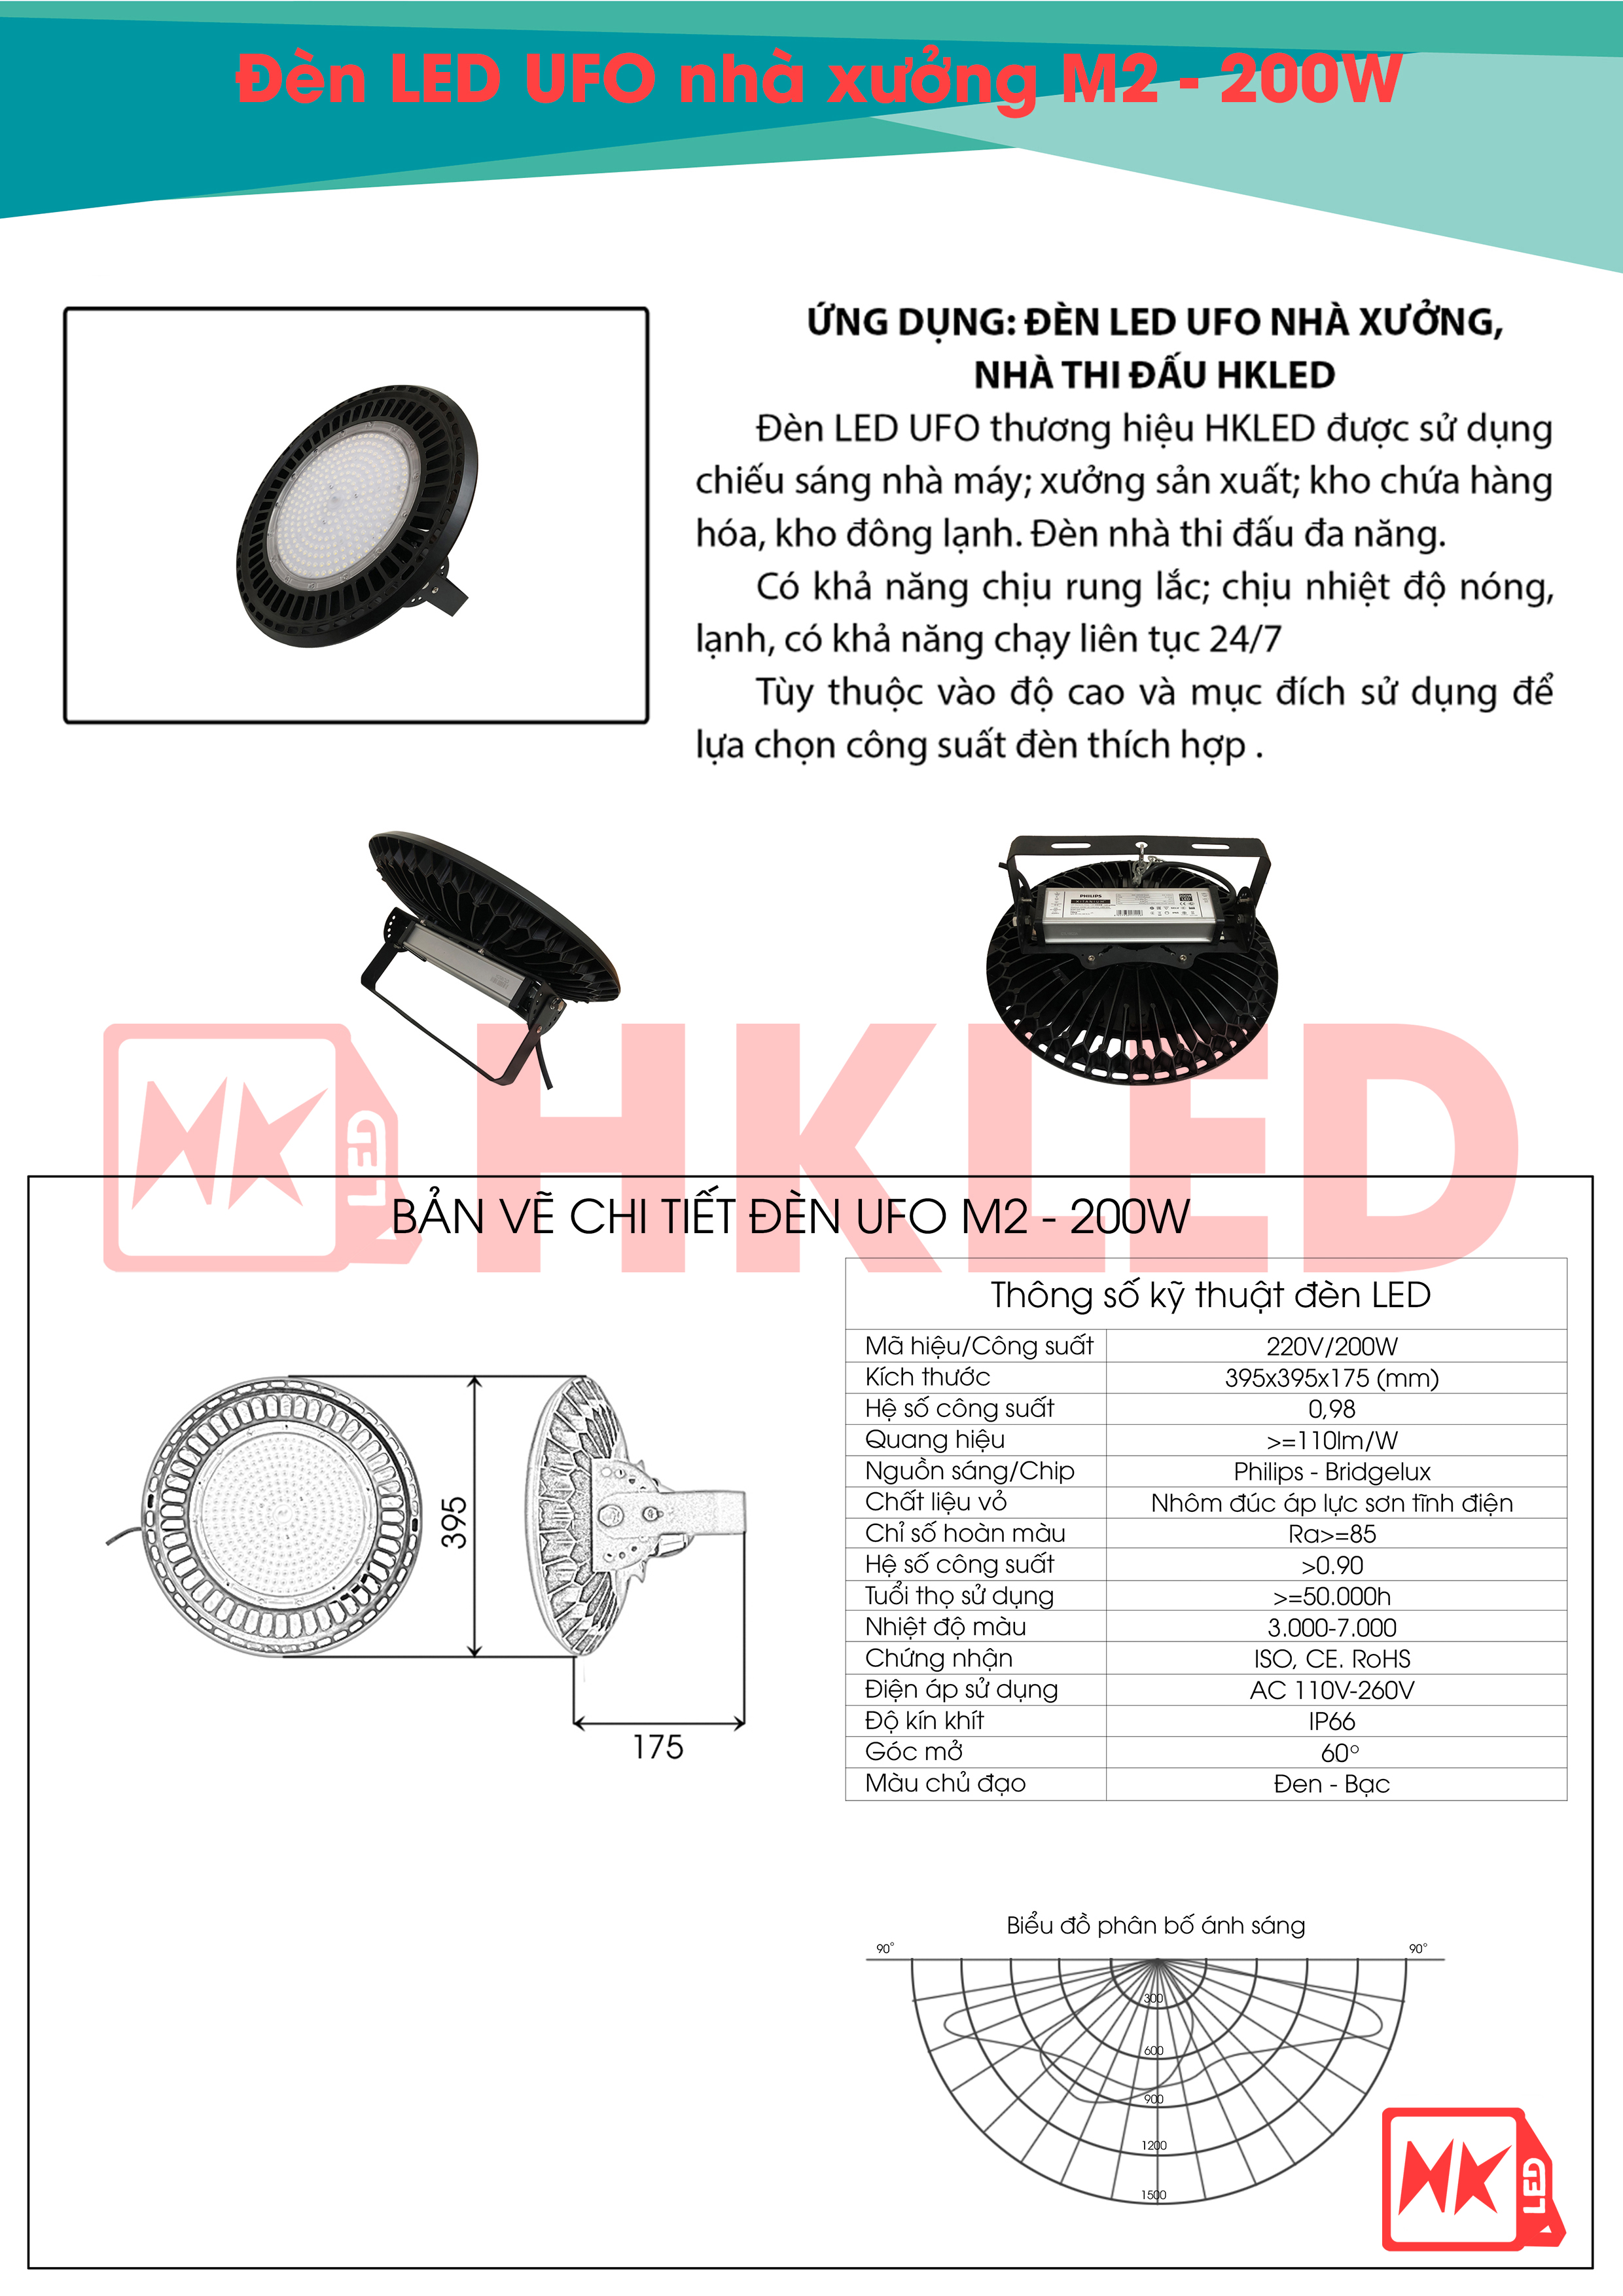 Ứng dụng, bản vẽ chi tiết và thông số kỹ thuật đèn nhà xưởng UFO M2 200W